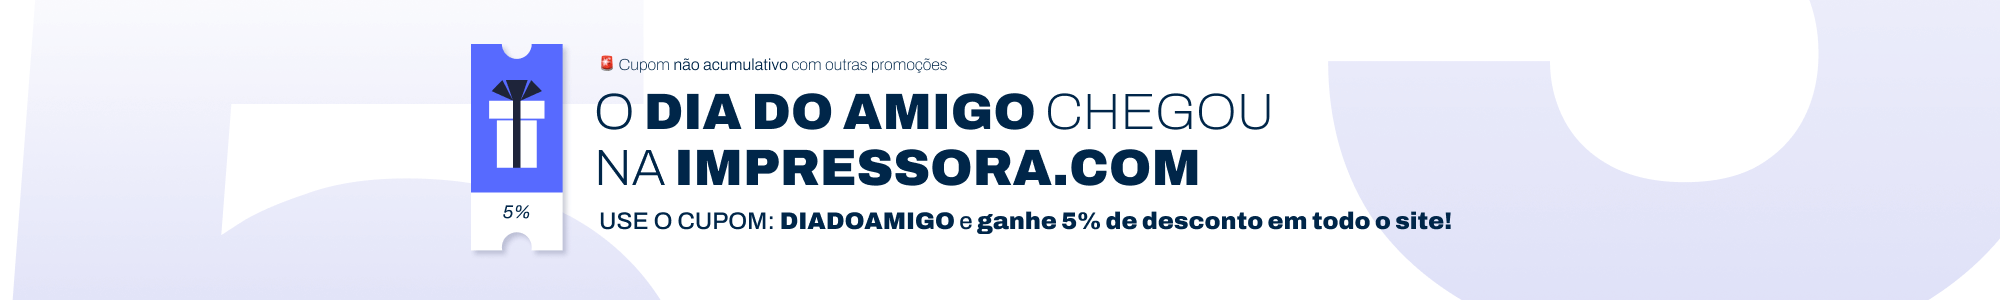 ICOM - DIA DO AMIGO 5% OFF